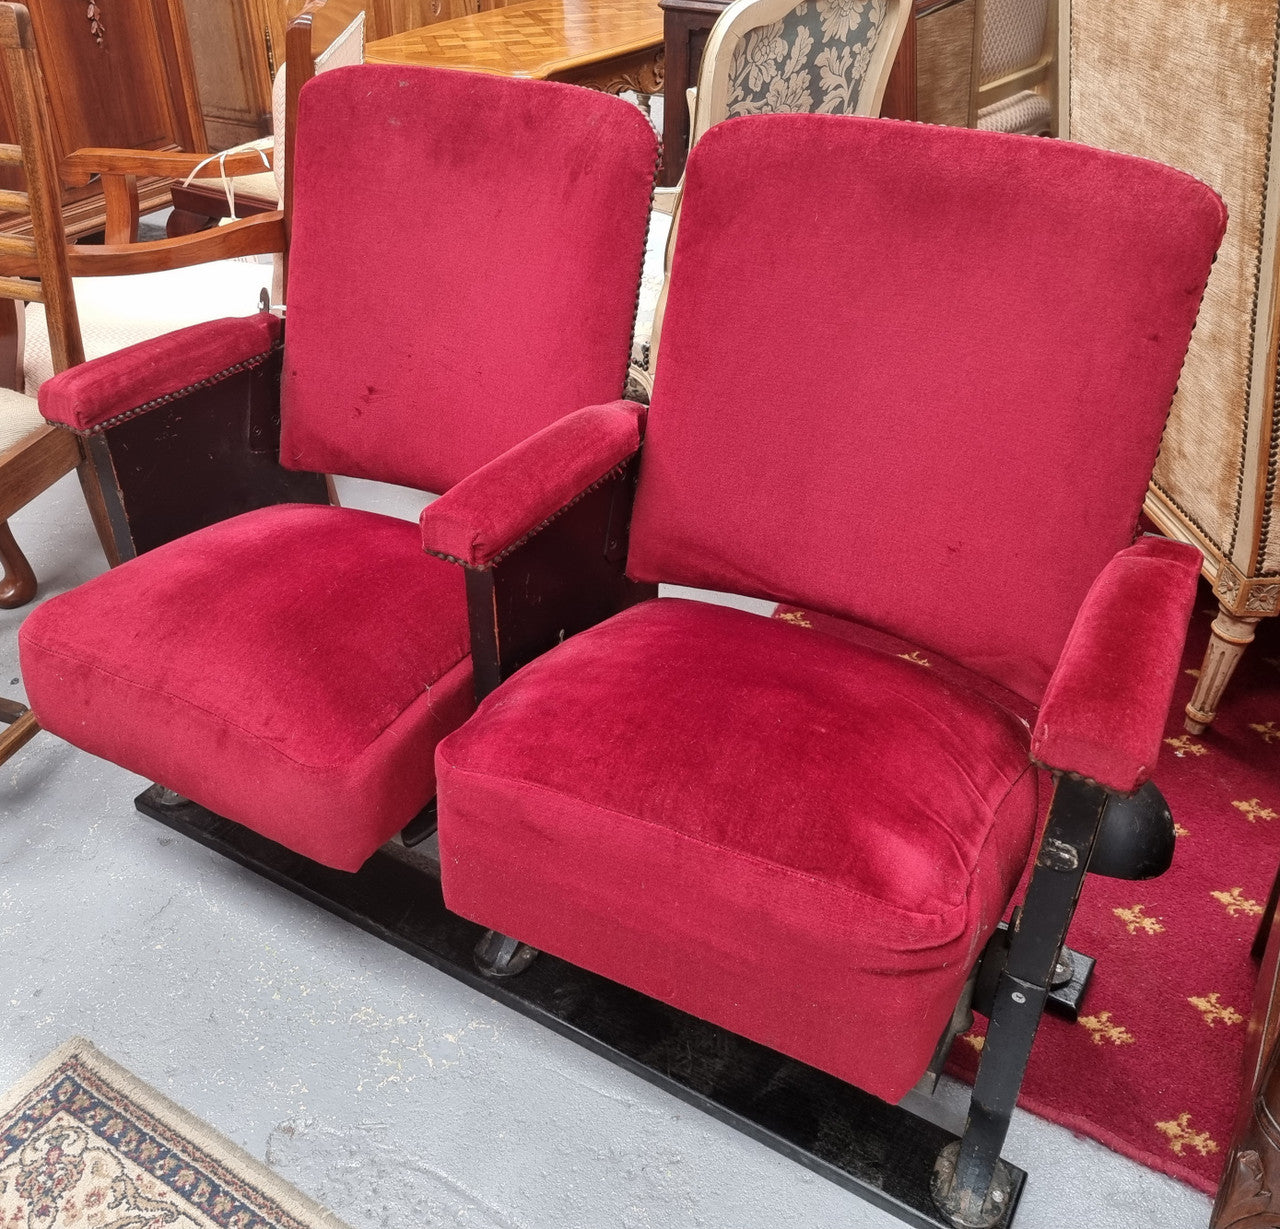 Pair of Vintage Red Velvet Cinema Seats